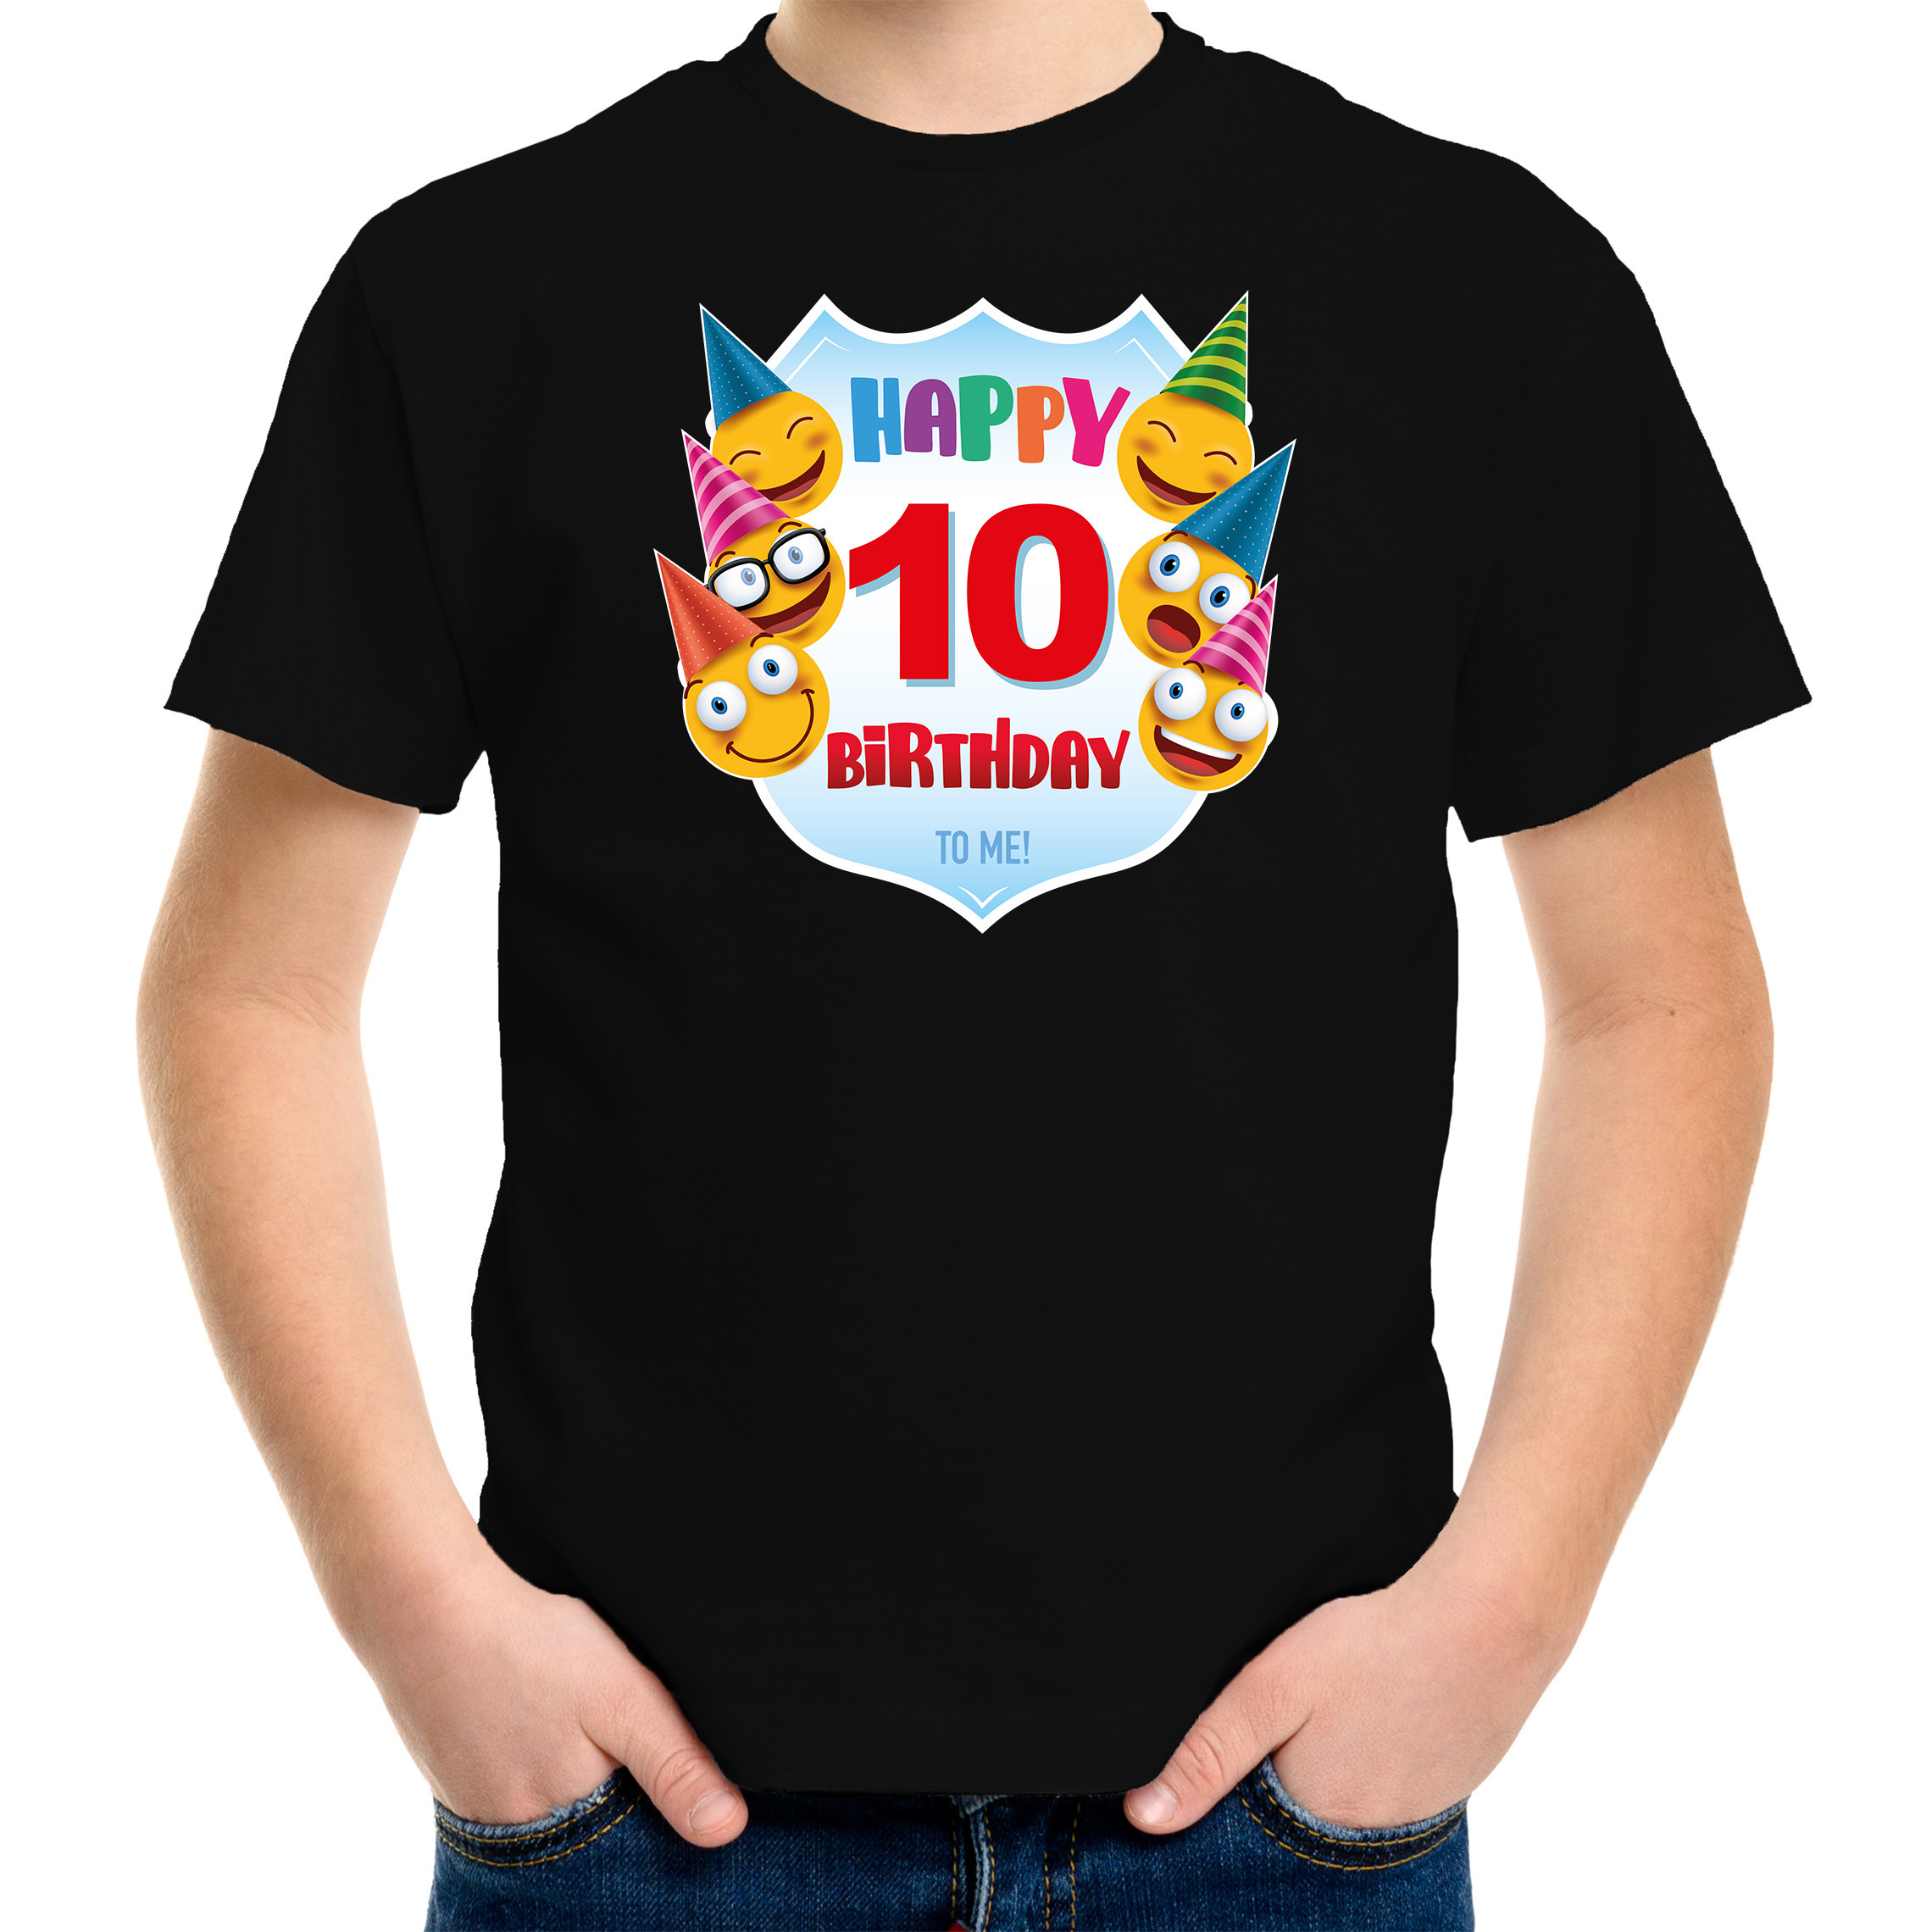 Happy birthday 10e verjaardag t-shirt - shirt 10 jaar met emoticons zwart voor kinderen